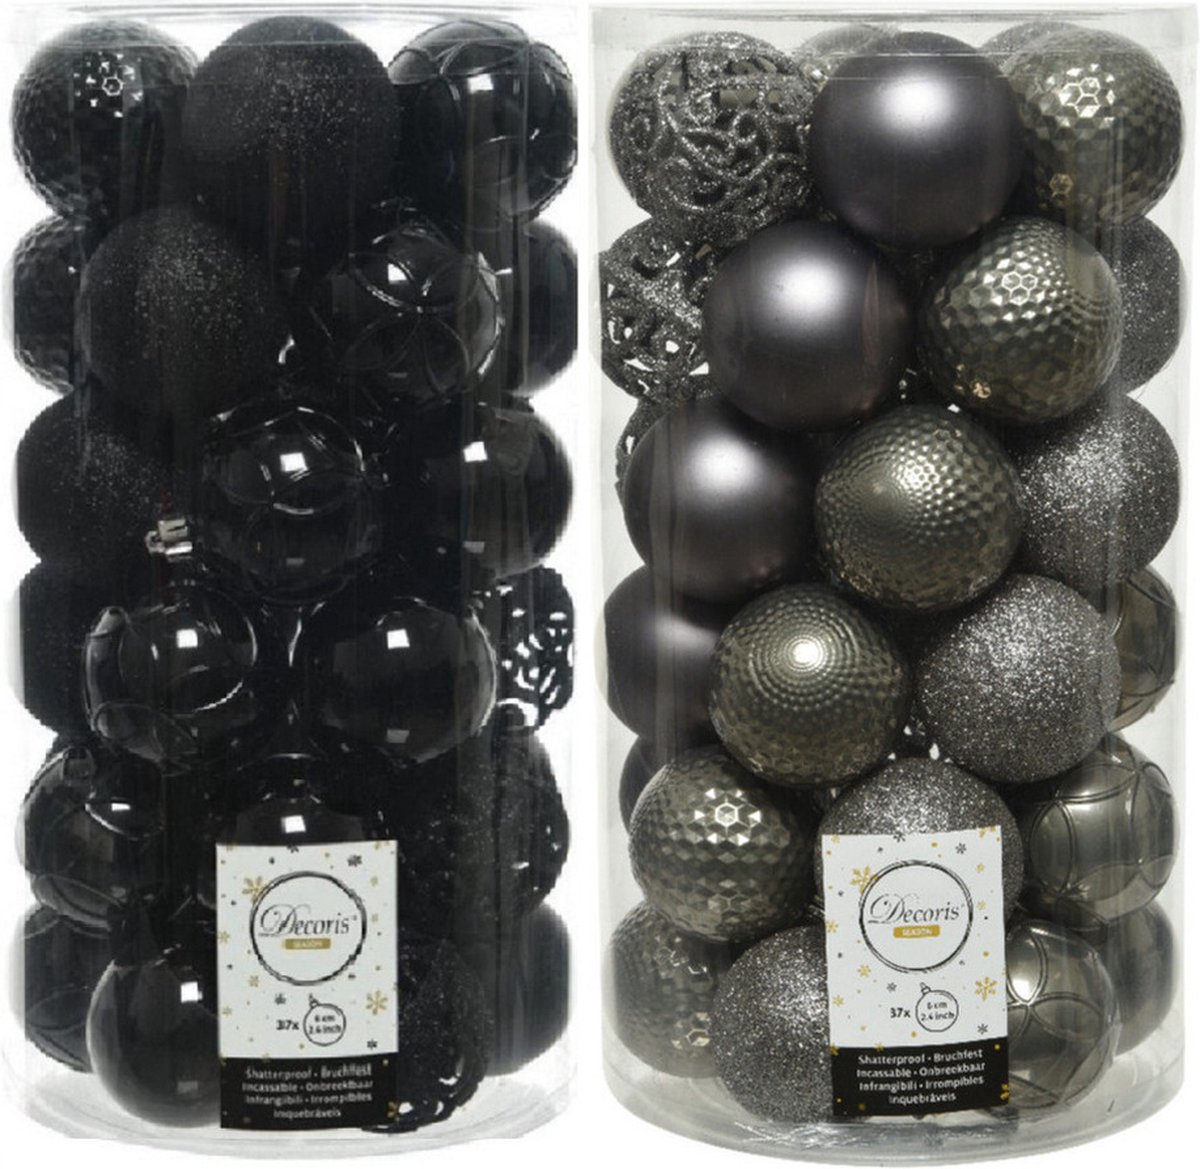 74x stuks kunststof kerstballen mix zwart en antraciet grijs 6 cm - Onbreekbare kerstballen - Kerstversiering